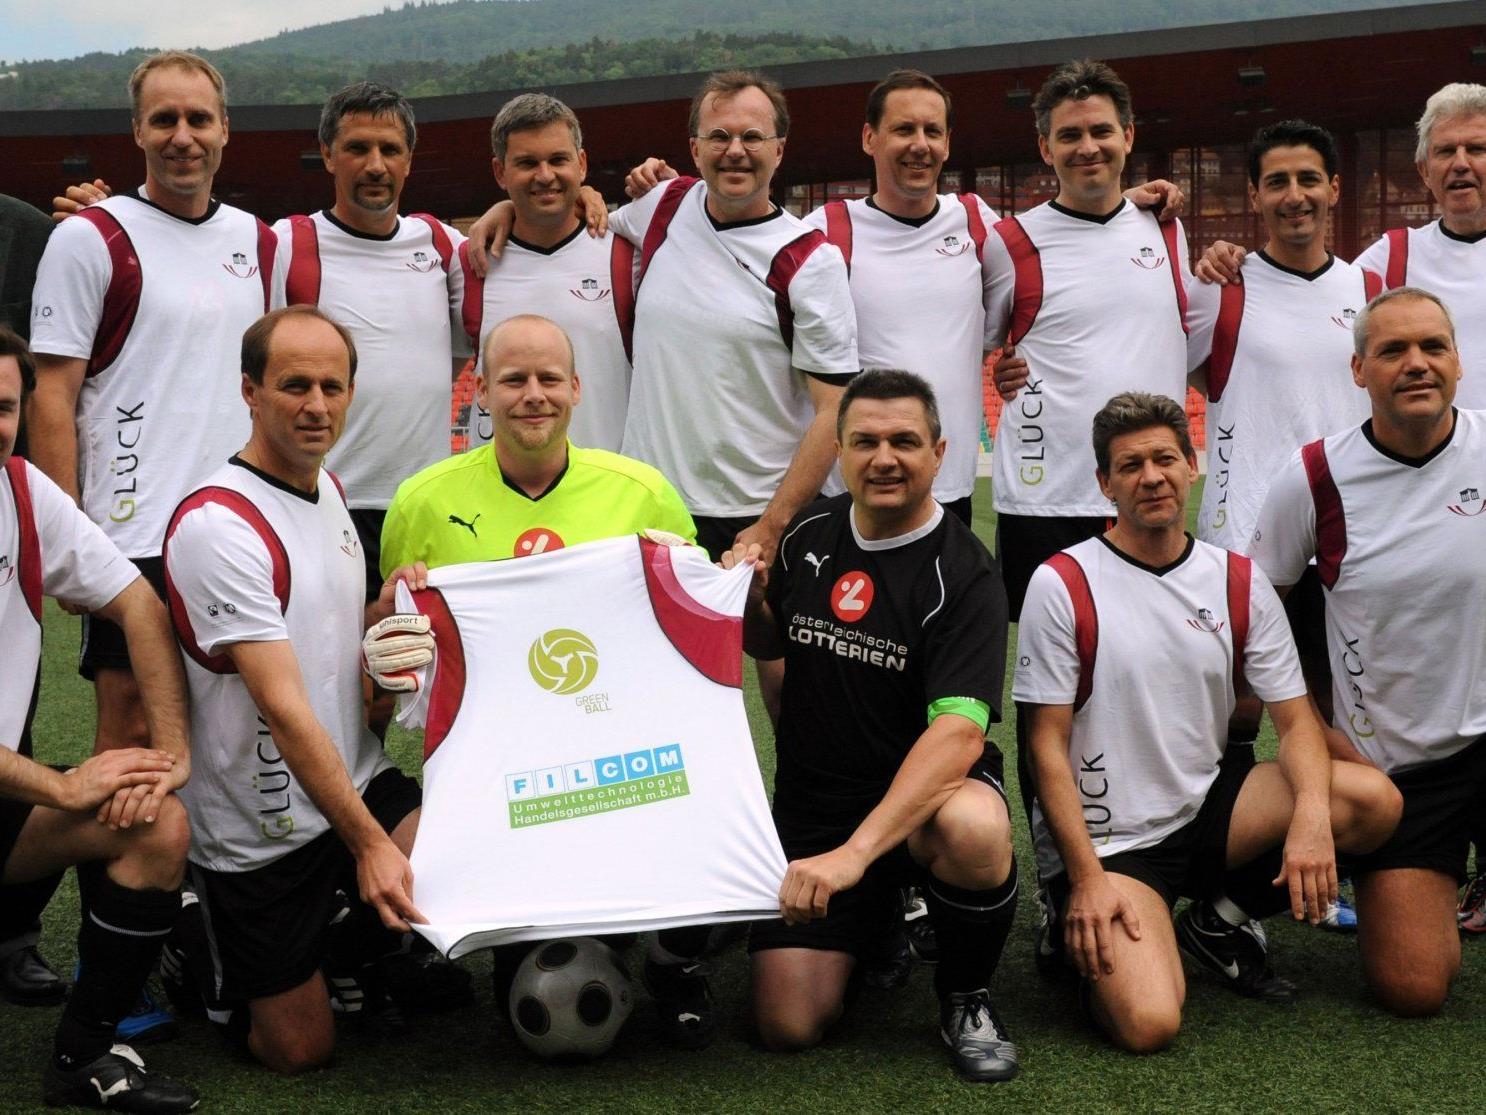 Der FC Nationalrat - im Bild beim Bewerb 2011 - ist international erfolgreich und hofft auch heuer wieder auf einen Sieg.